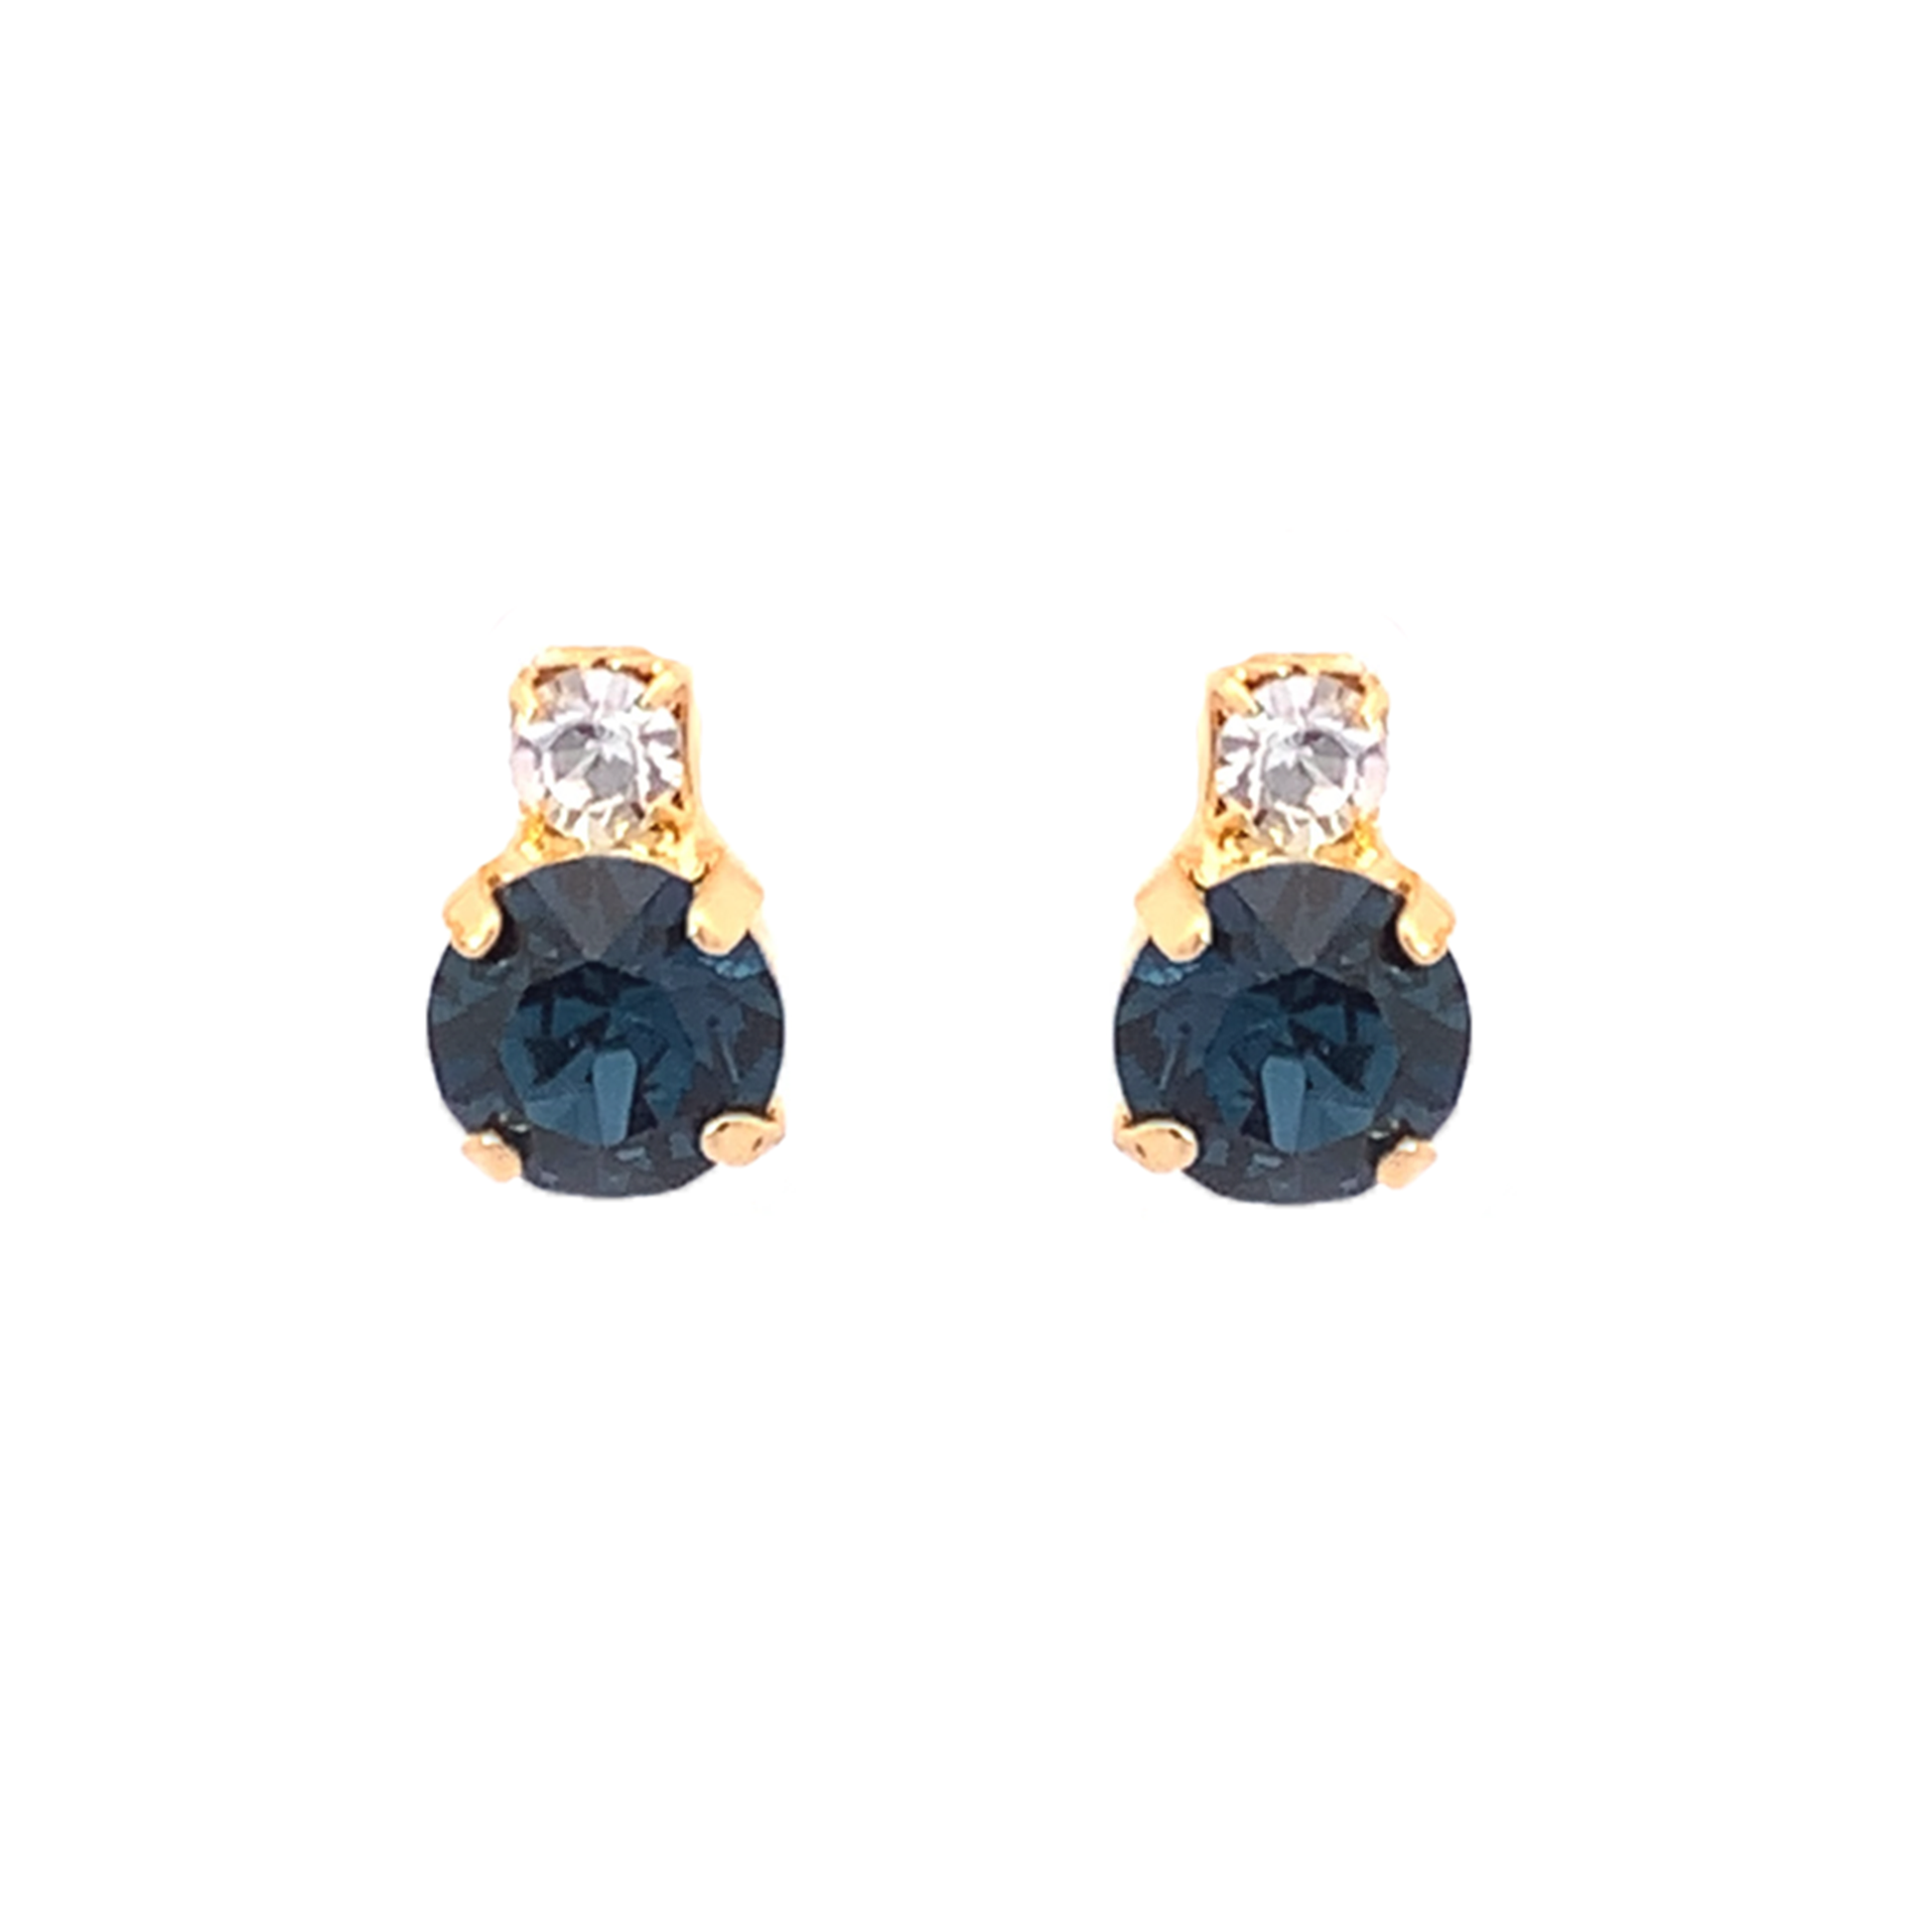 Sapphire stud earrings gold